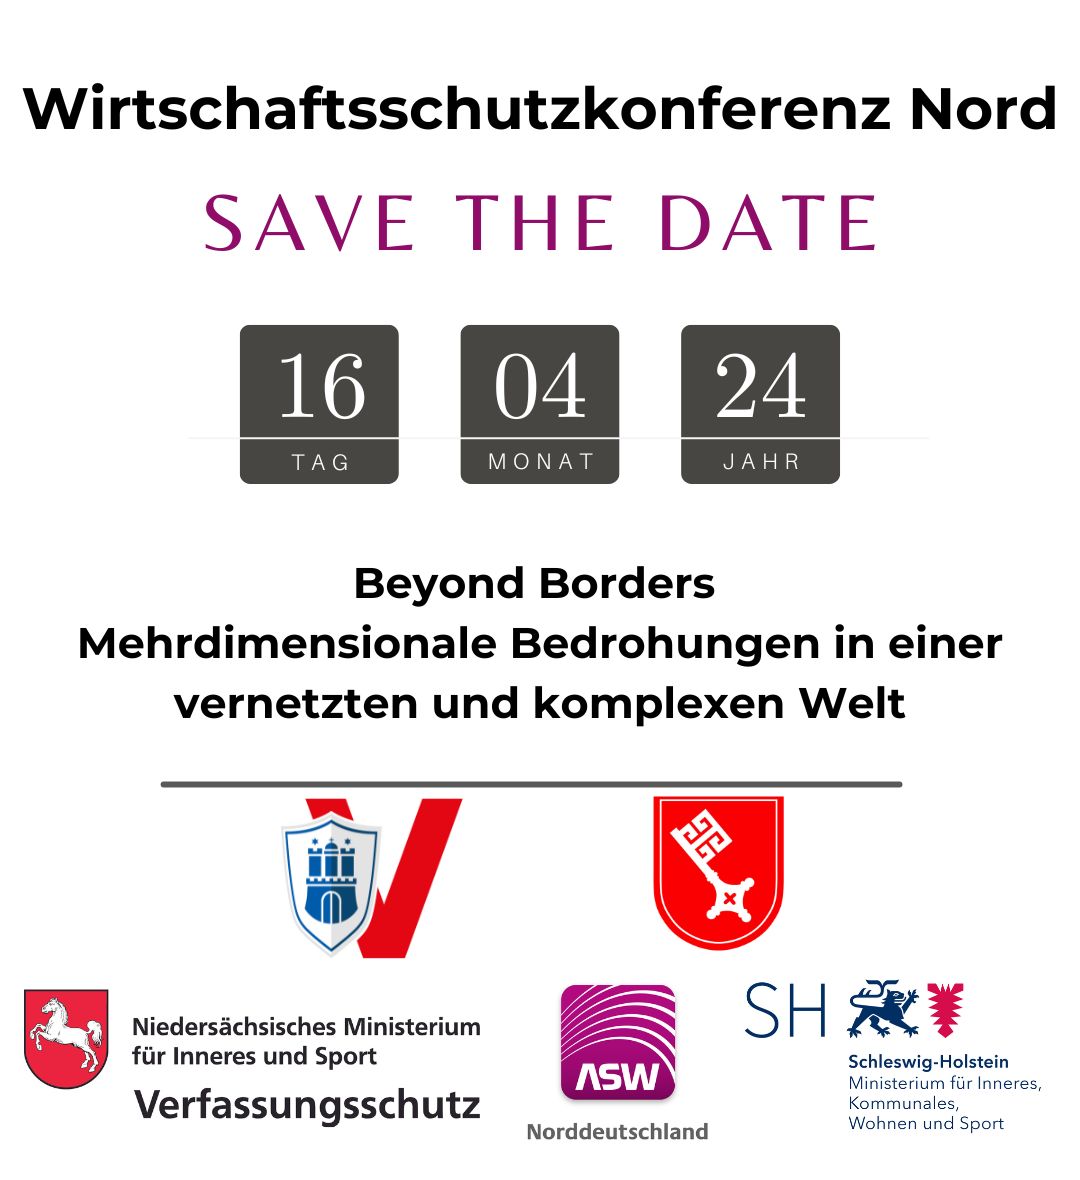 Save the Date: Schulterschluß im Norden: Wirtschaftsschutzkonferenz Nord am 16.04.2024 in Bremen